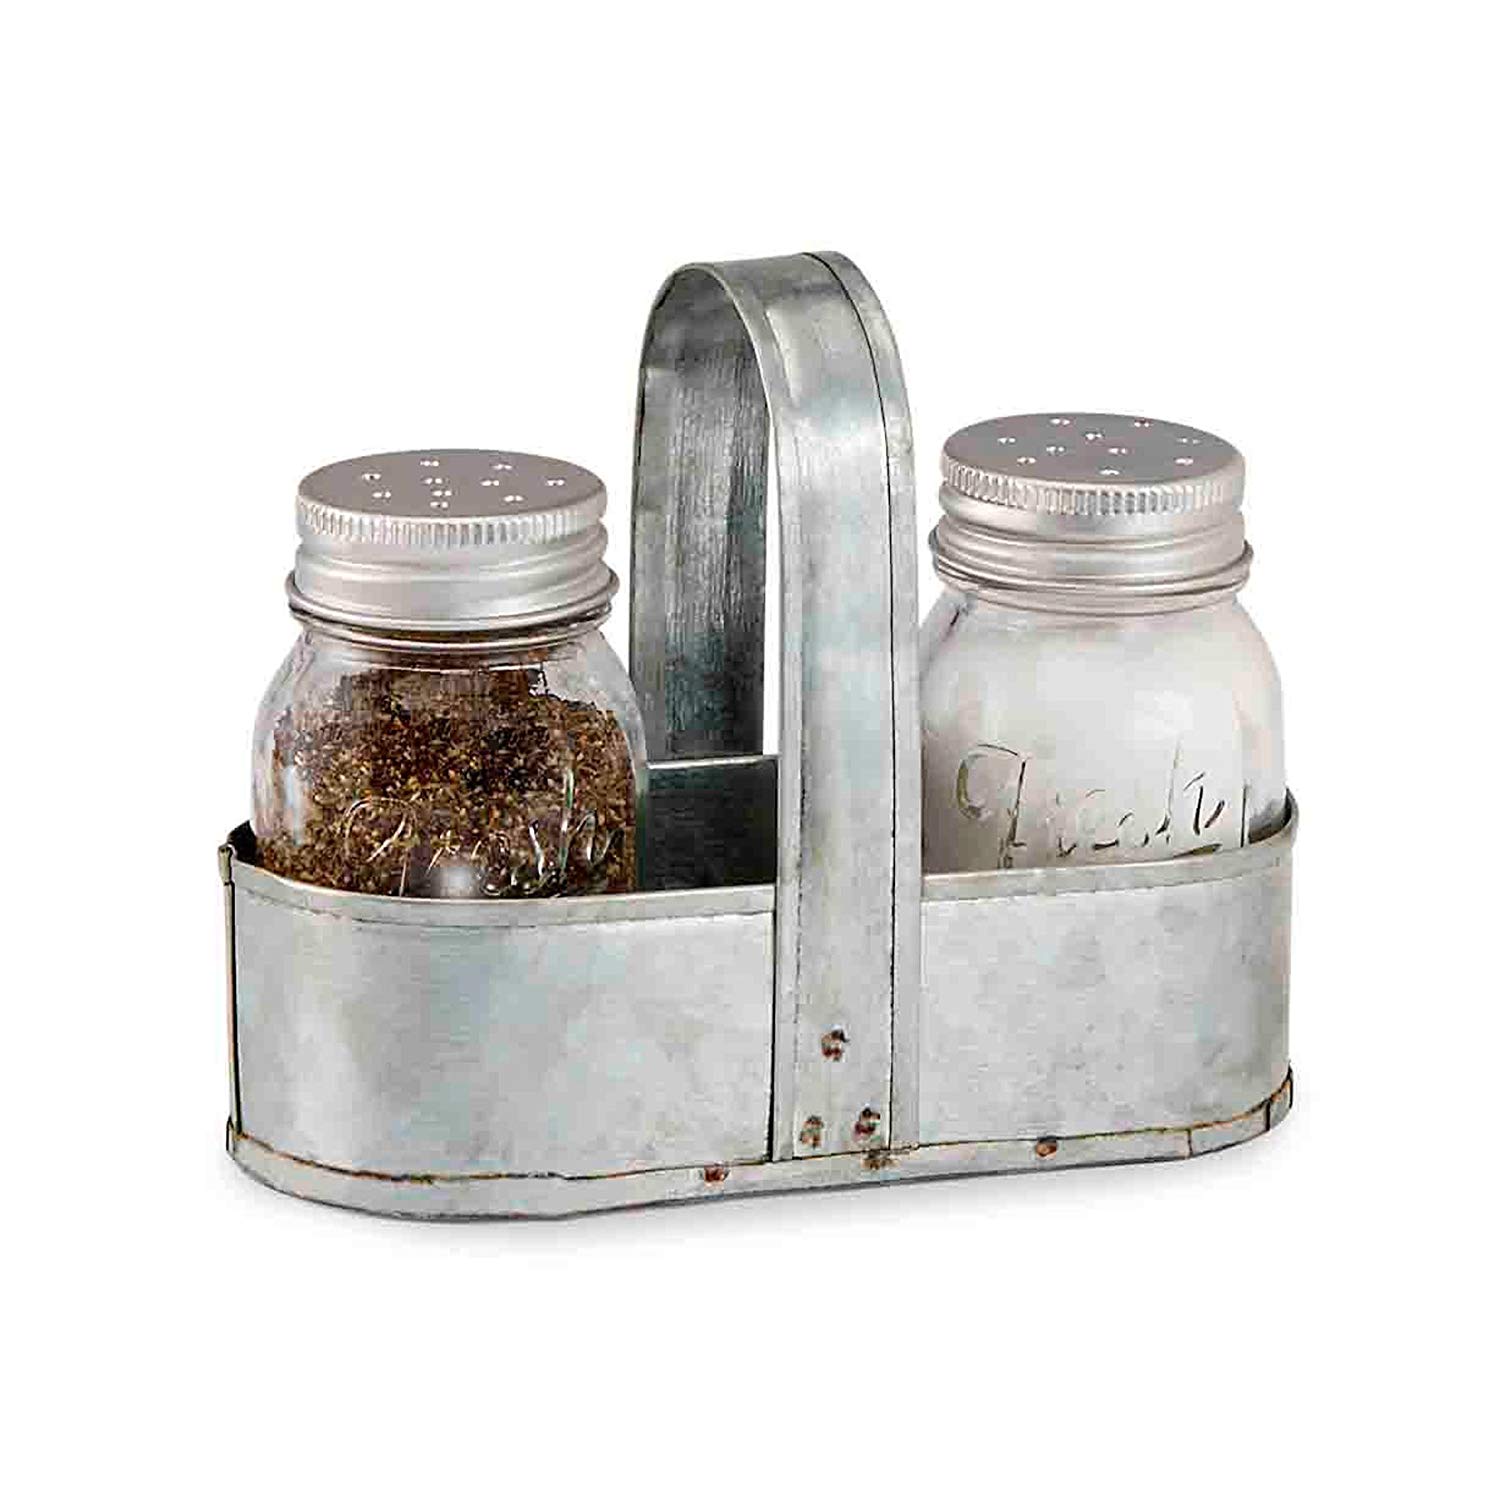 Amazon.com: Mud Pie Fresh Jar Salt and Pepper Caddy Set, Silver ...